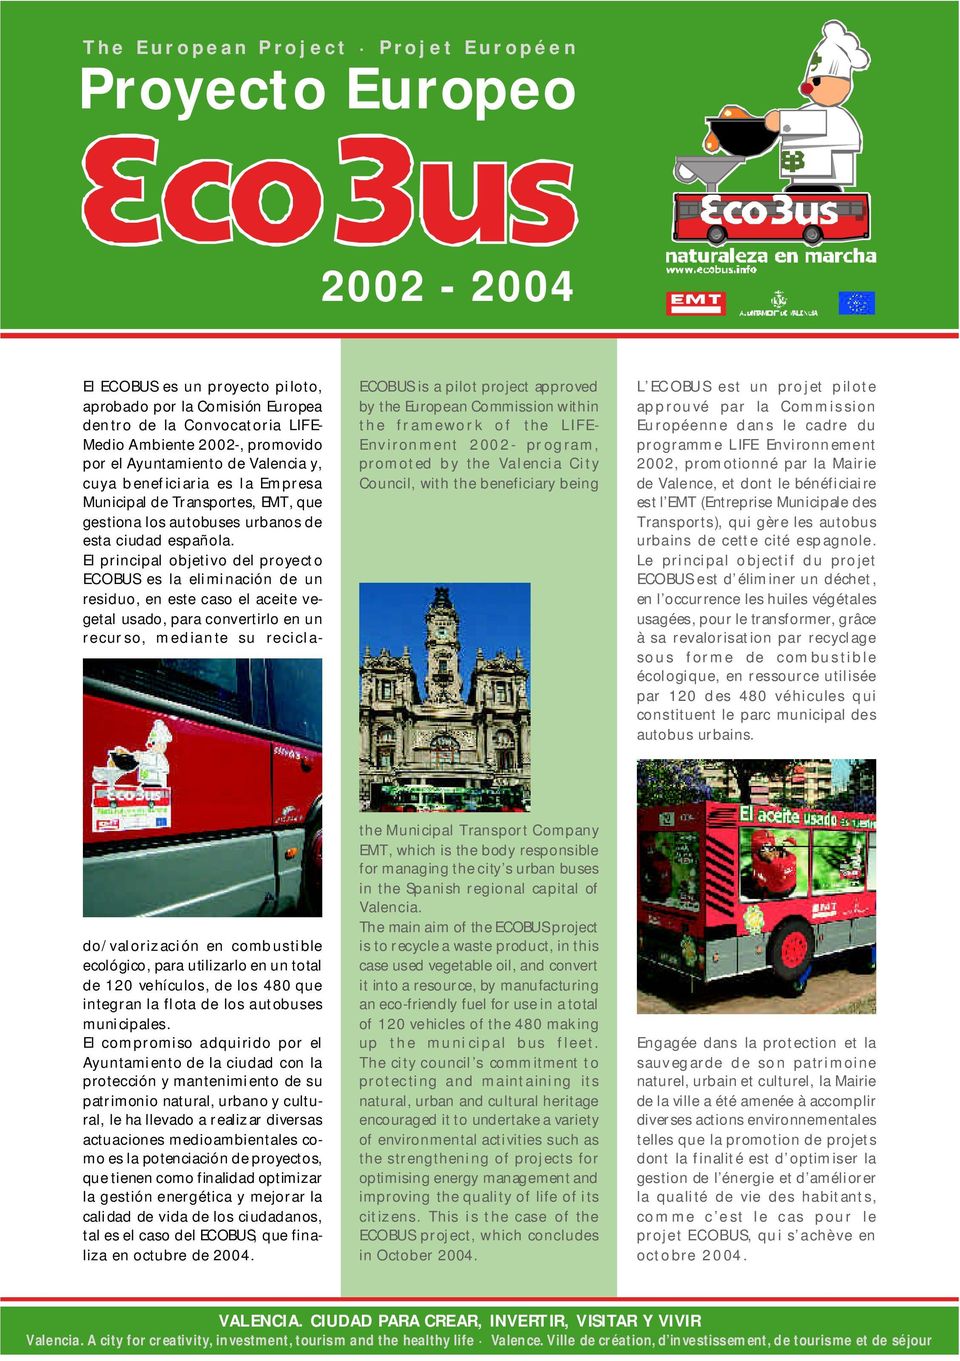 par la Mairie de Valence, et dont le bénéficiaire est l EMT (Entreprise Municipale des Transports), qui gère les autobus urbains de cette cité espagnole.